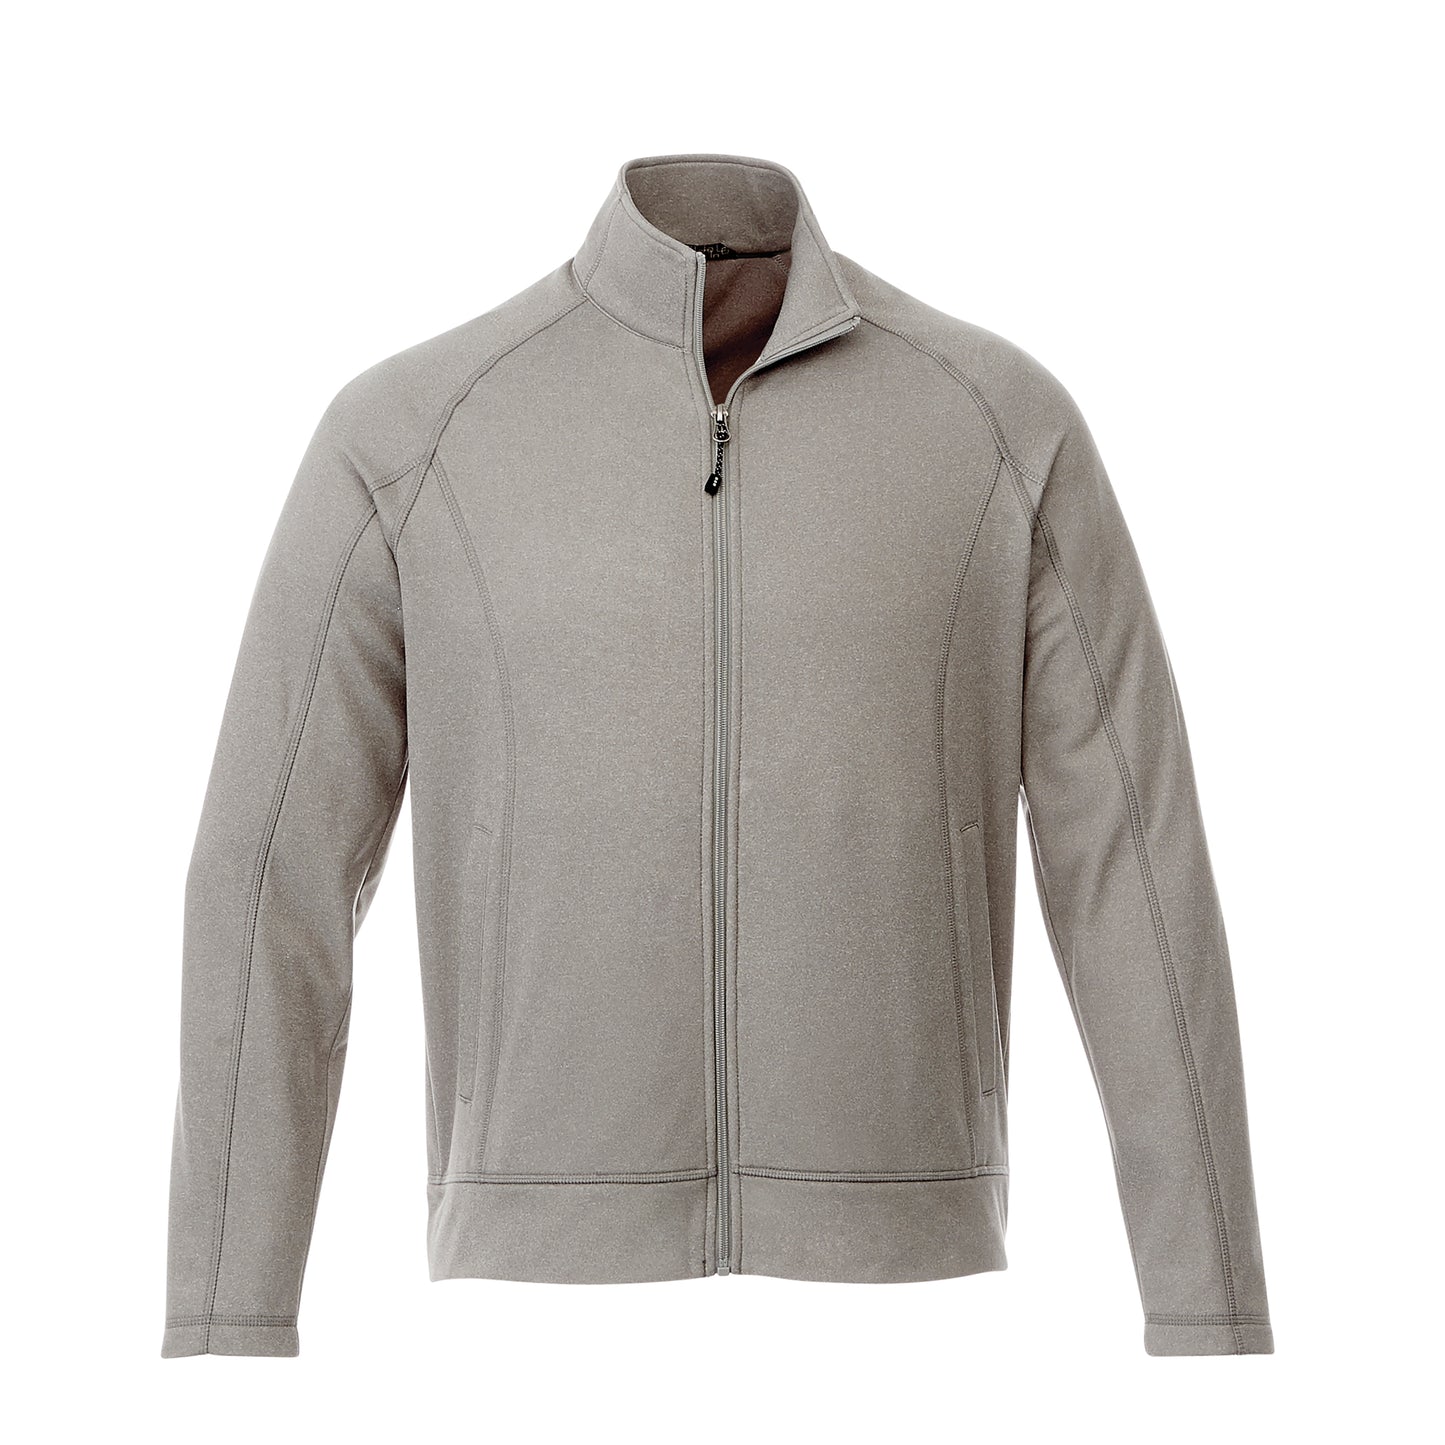 Veste de travail 100 % tricot de jersey pour homme Uniformes Sélect #18117 gris chiné